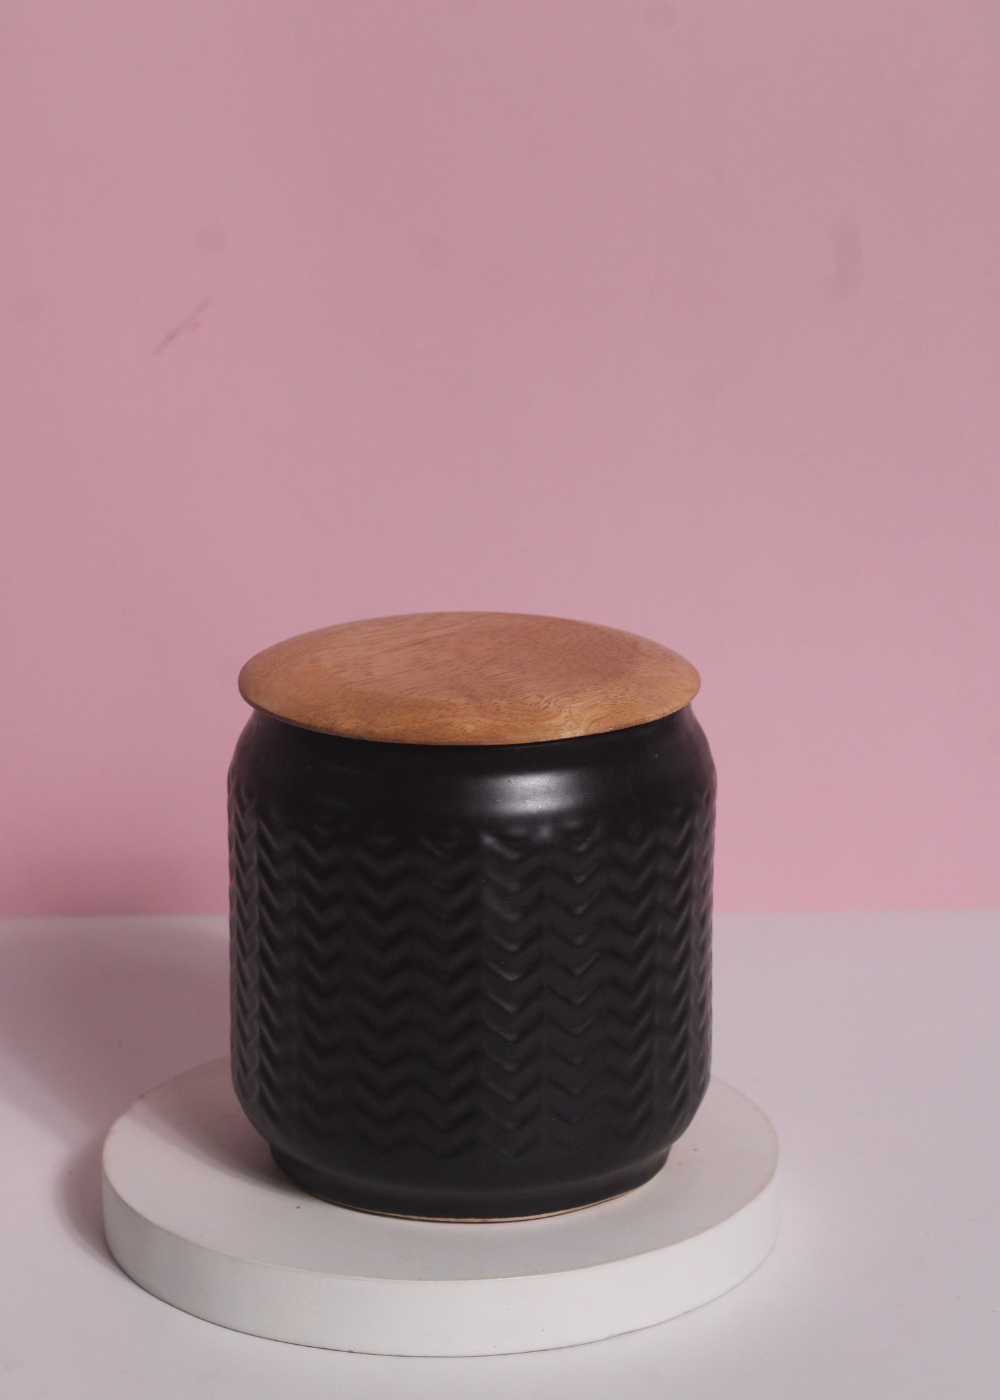 Black Airtight Storage Jar - Medium